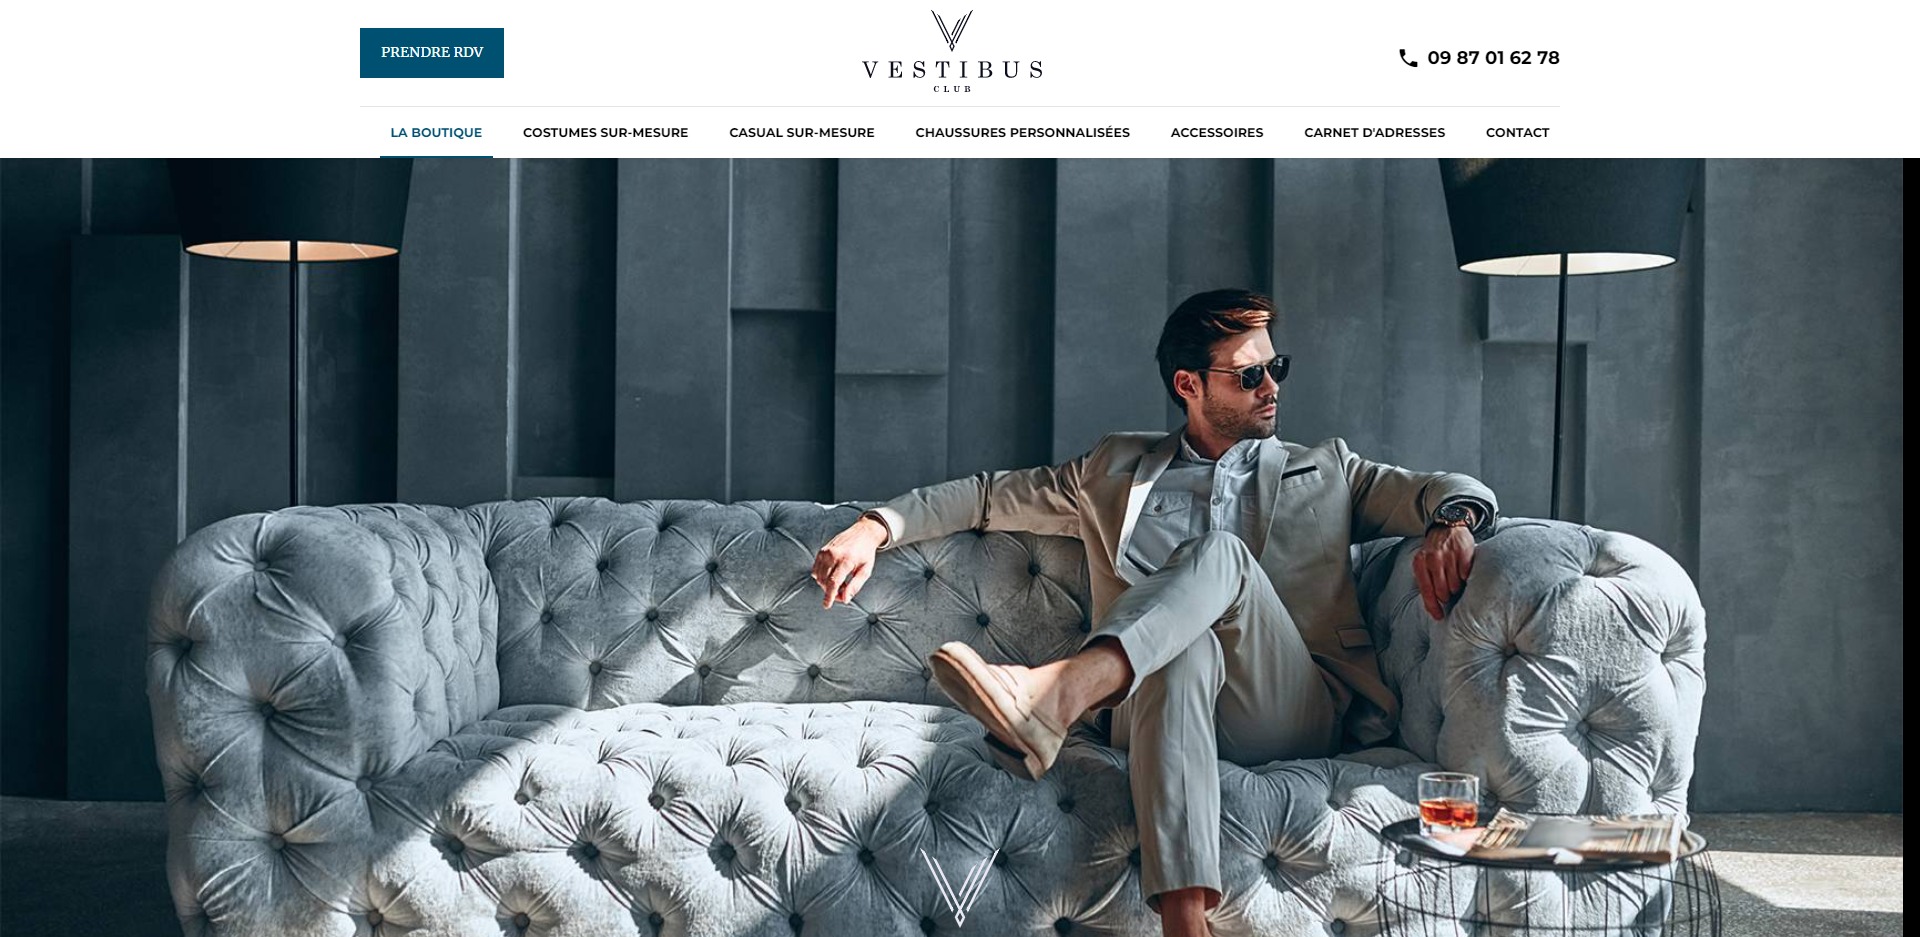 Création d’un site internet pour La boutique Vestibus Club, spécialiste du costume sur-mesure à Nice 